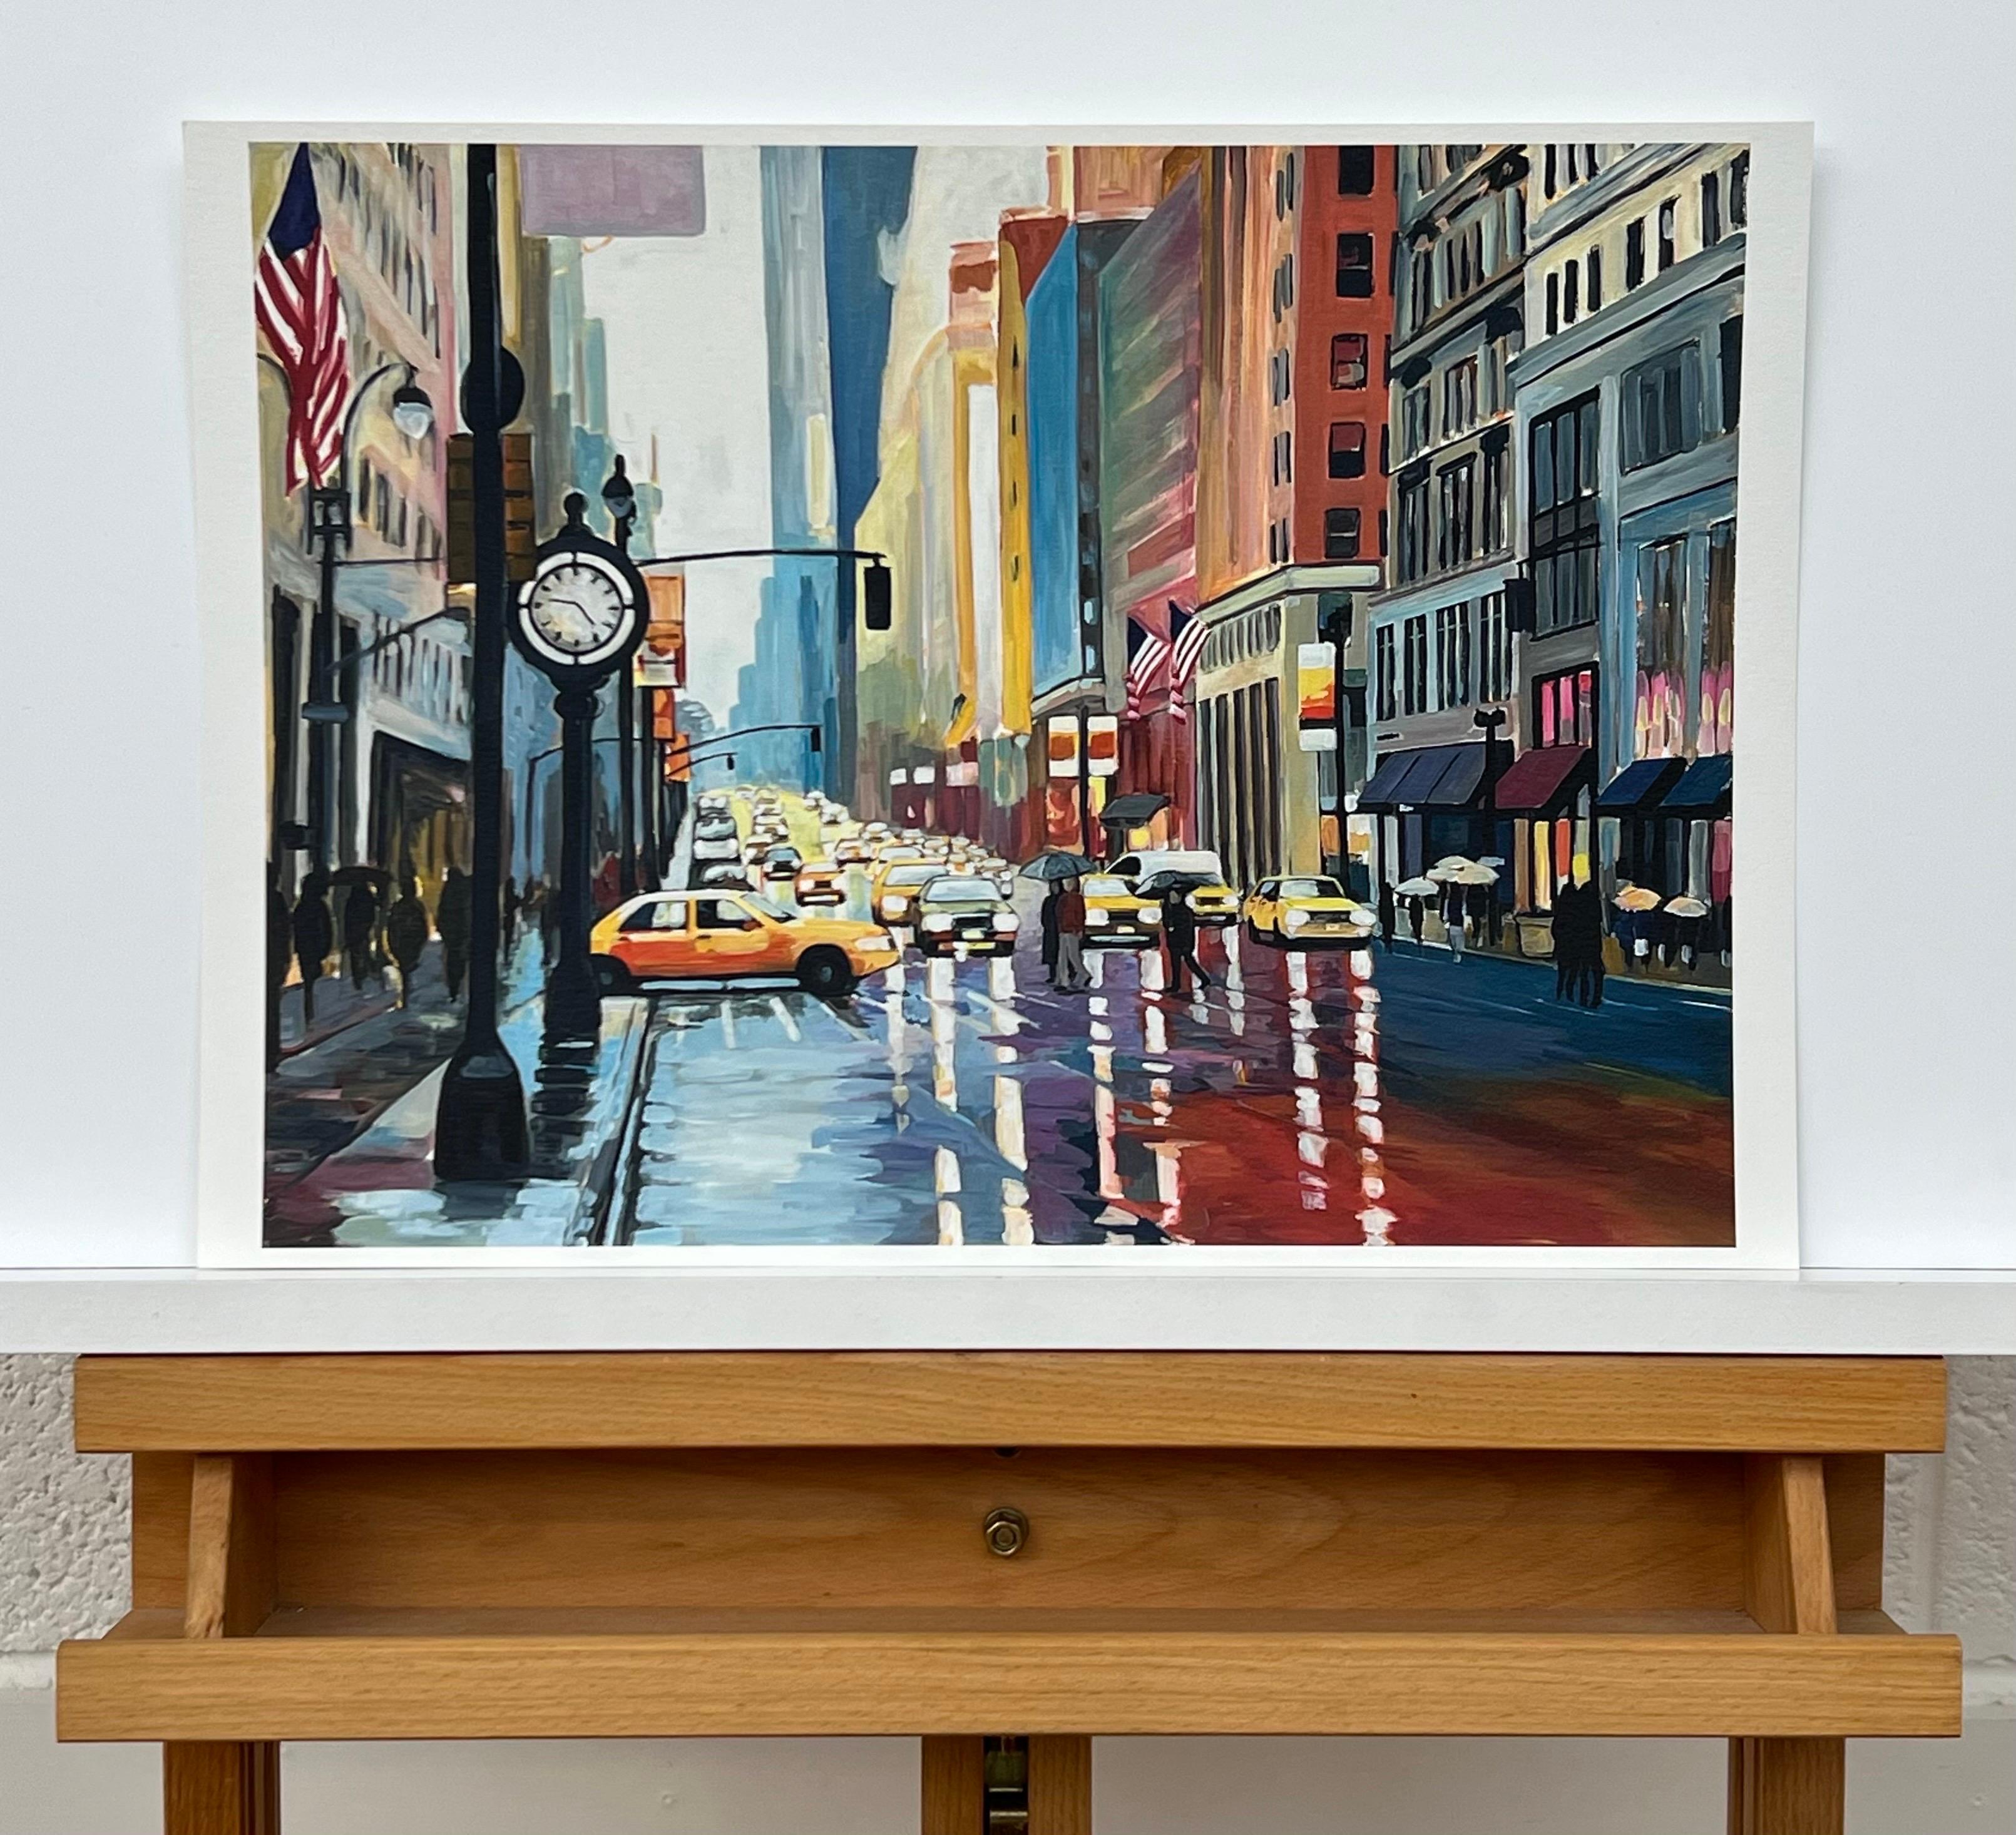 Hochwertiger Druck des Gemäldes New York Rain III der führenden britischen Urban Artist Angela Wakefield. Teil ihrer New Yorker Serie. Vom Künstler handsigniert. 

Kunst misst 16 x 12 Zoll 

Der Charakter der New Yorker Skyline und der großen